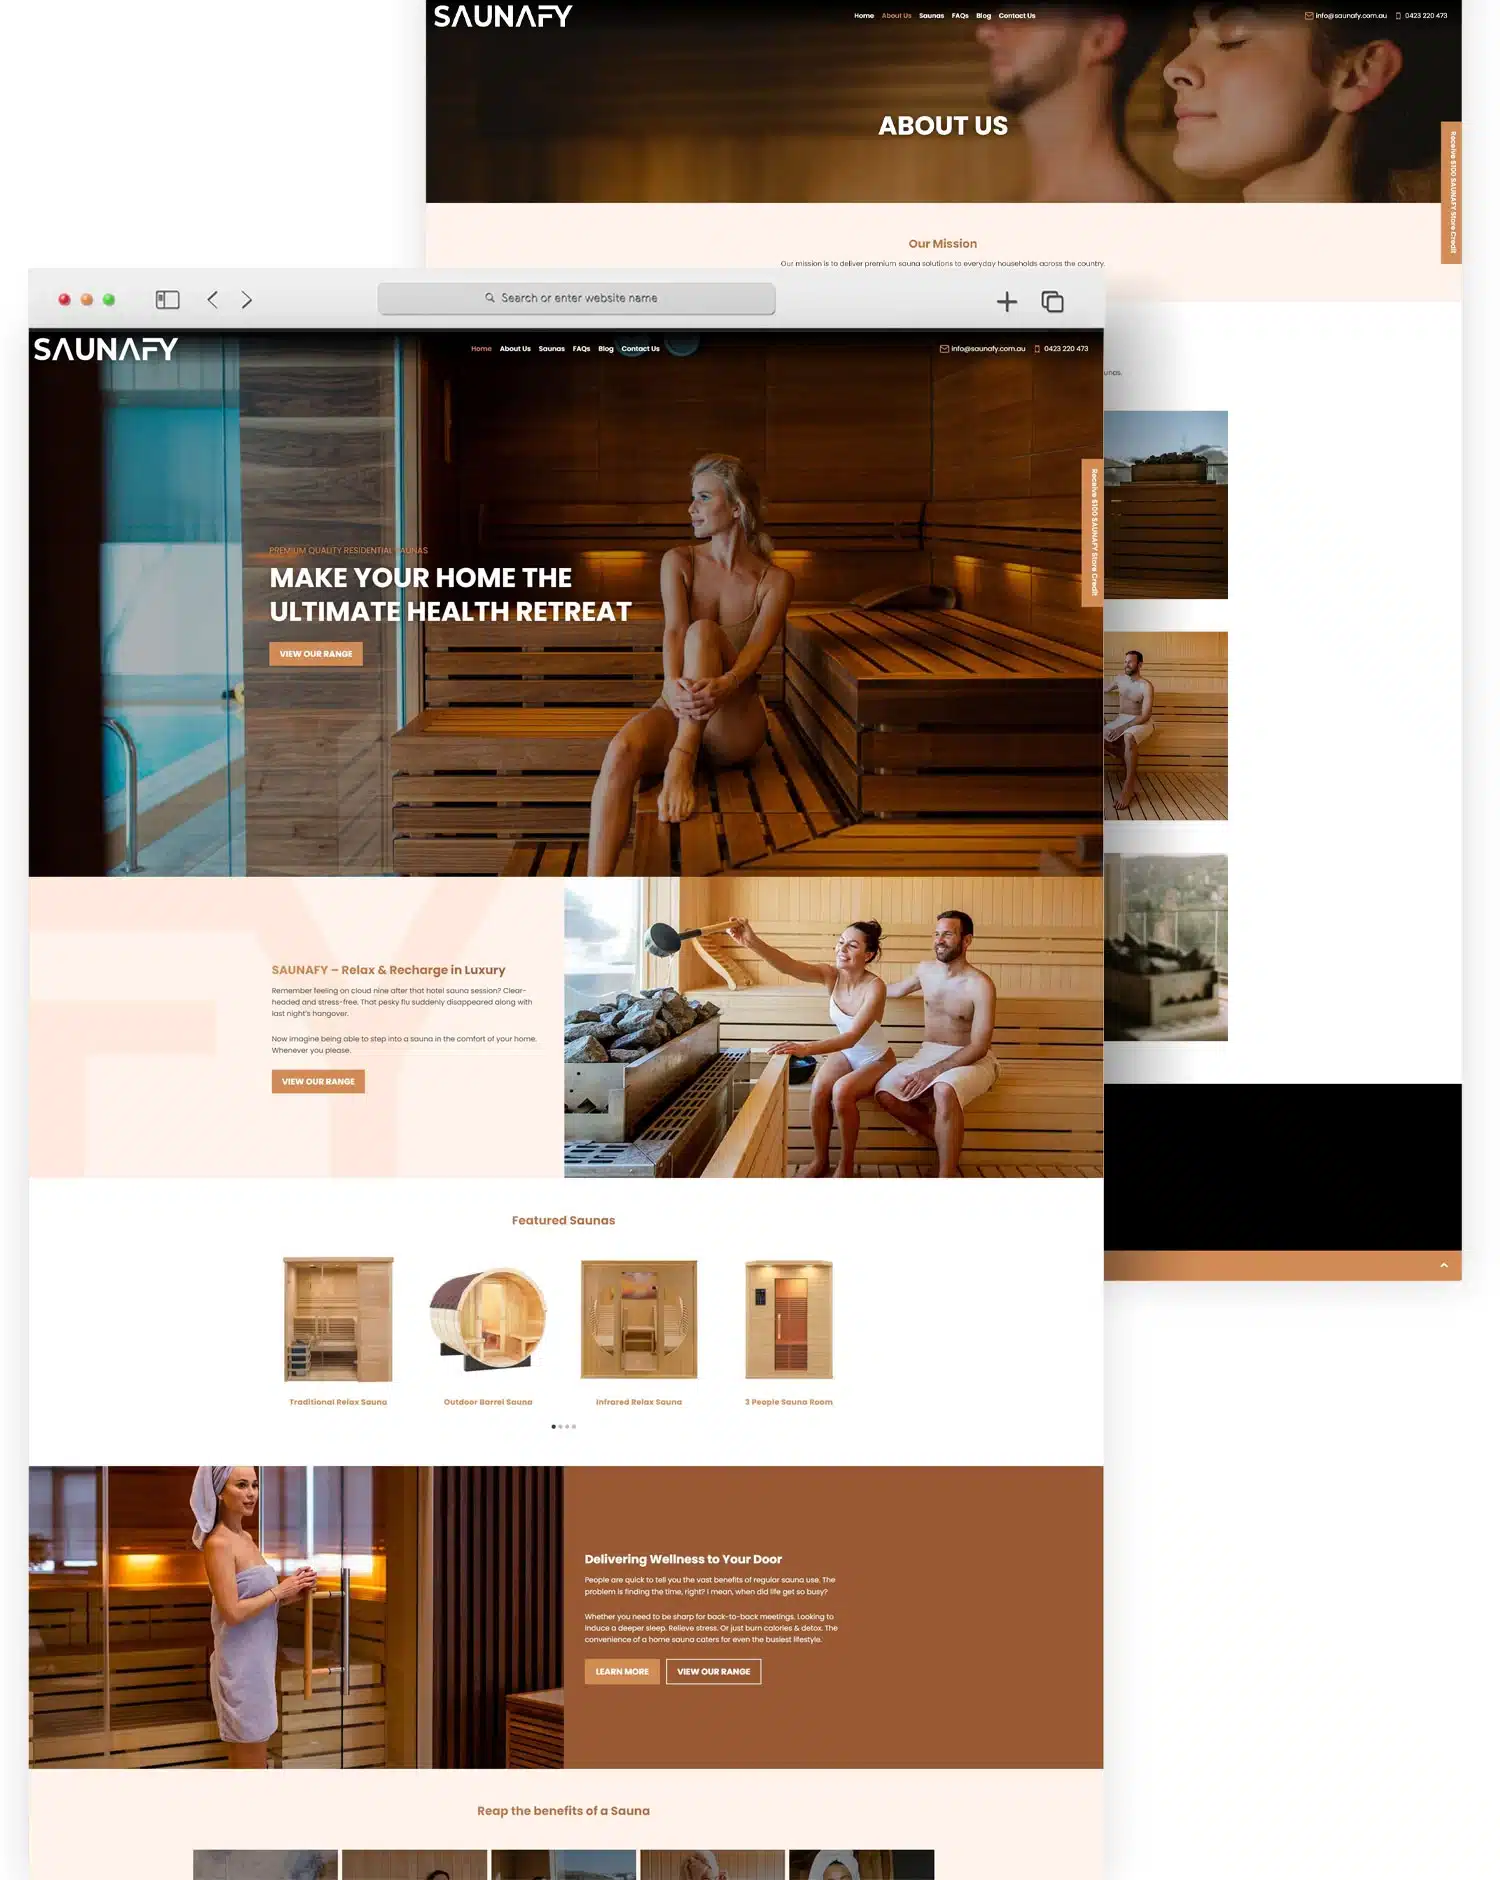 saunafy website design